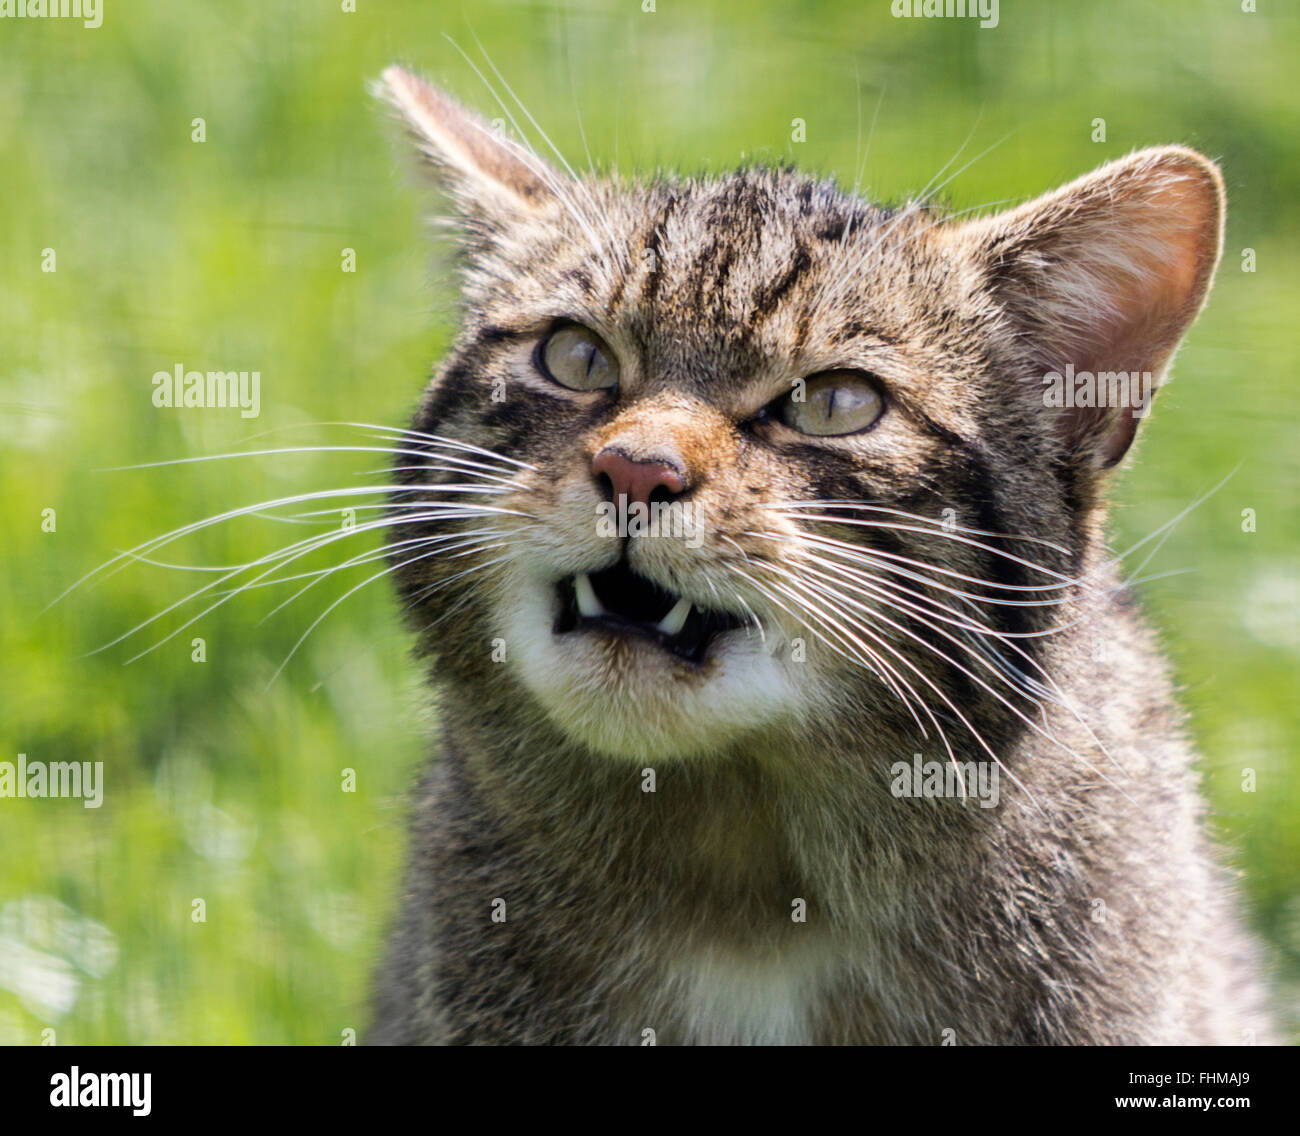 Scottish wild cat head shot con grandes dientes inferiores mostrando. Portero esperando para lanzar algunos pollos para alimentar. Sujetos capturados en gran pluma. Foto de stock